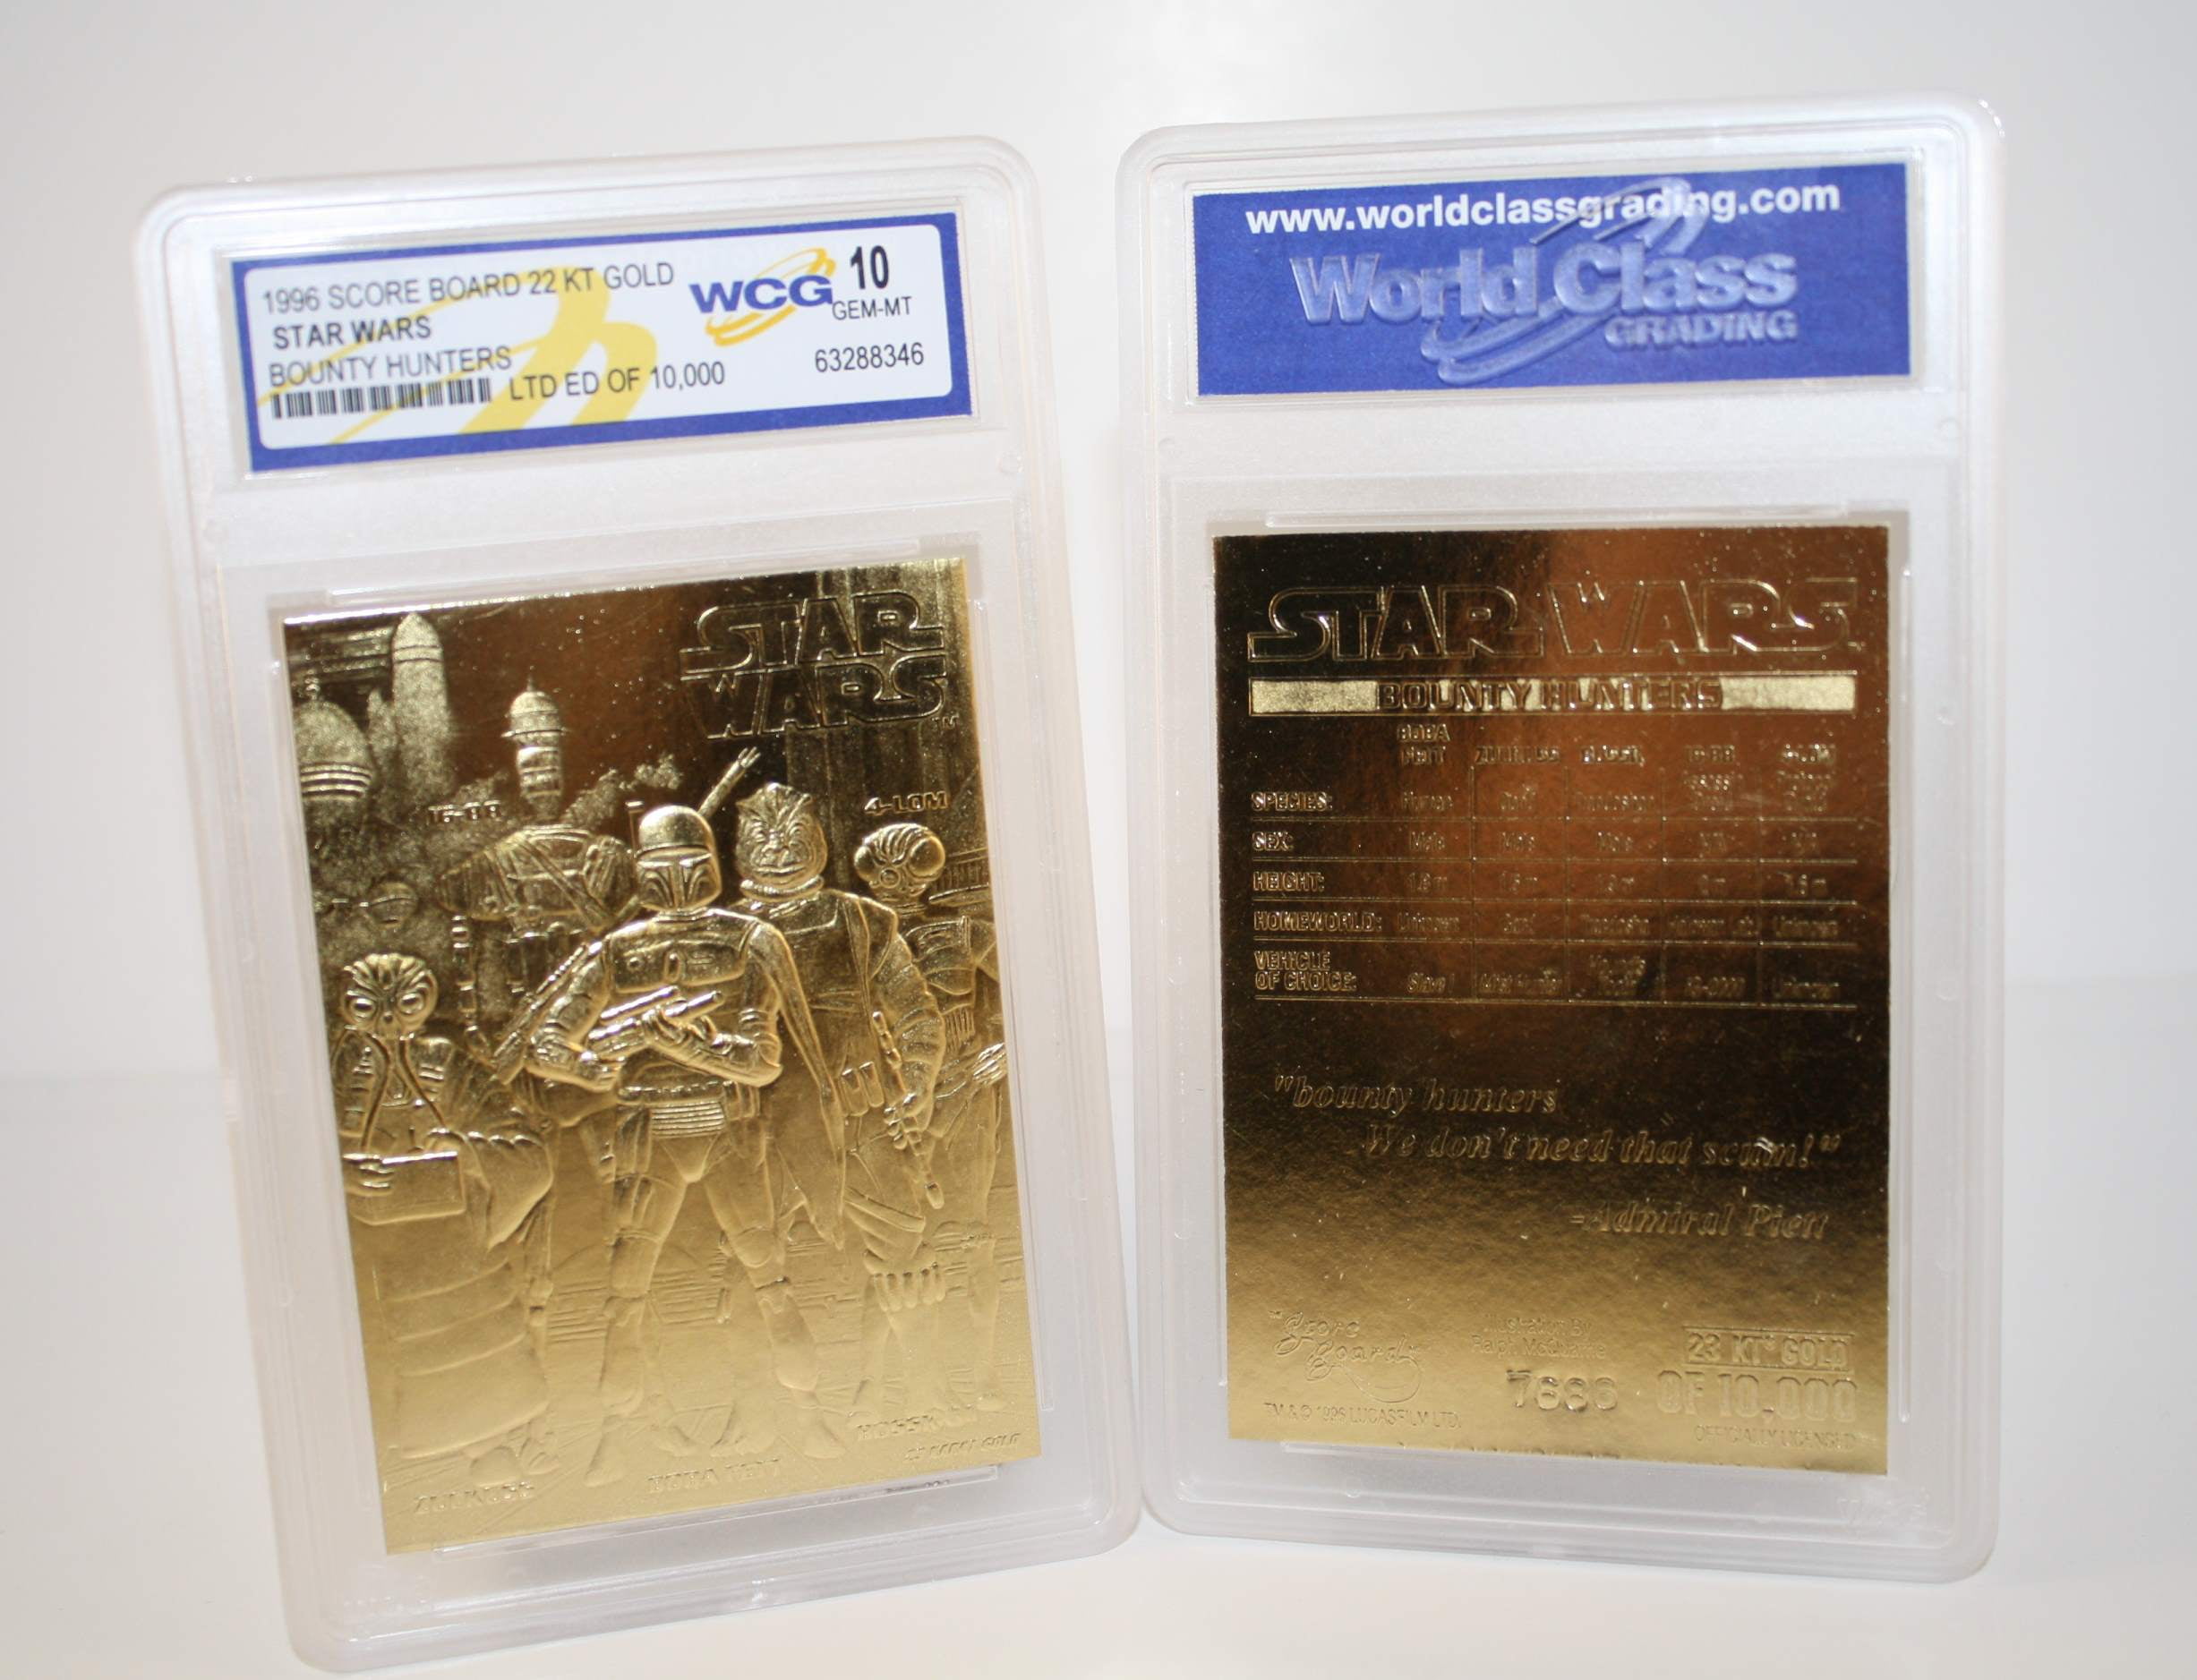 STAR WARS Set of 9 Official 23K Gold Cards Graded Gem-Mint 10 DARTH VADER SERIES 